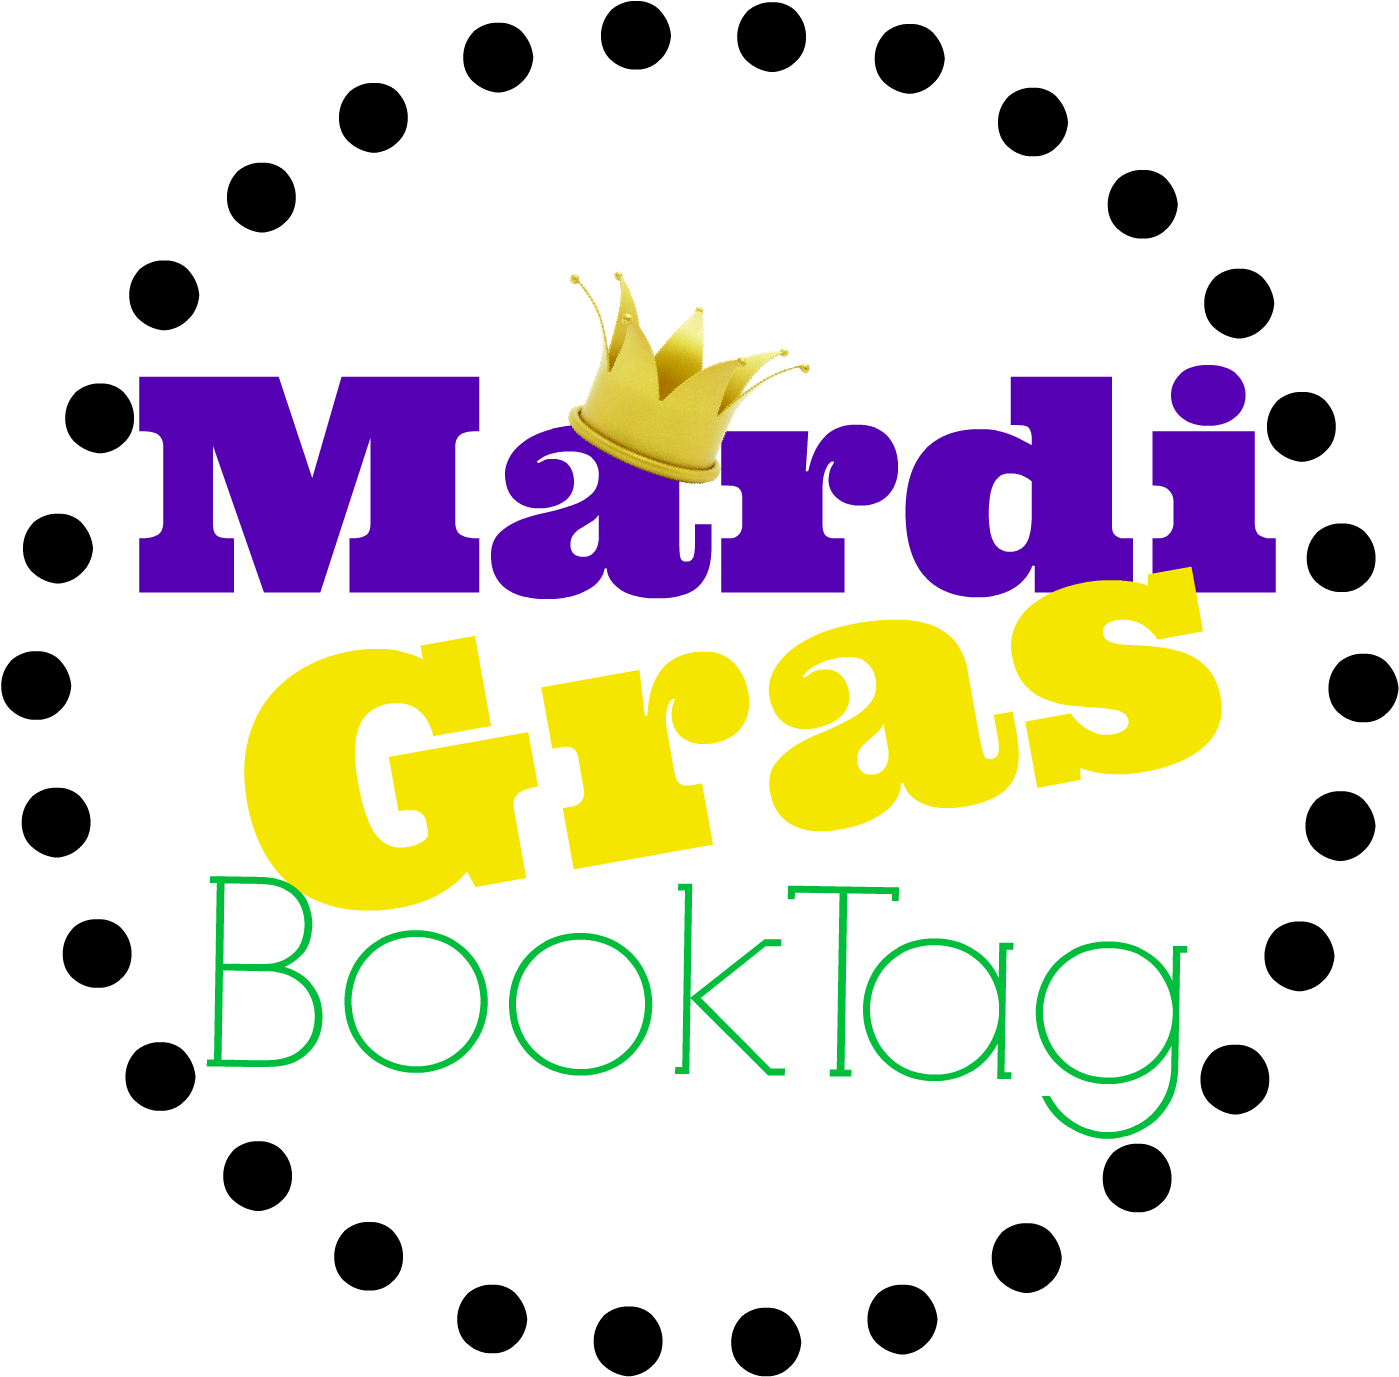 The Mardi Gras Book Tag - The Mardi Gras Book Tag (1551x1551)